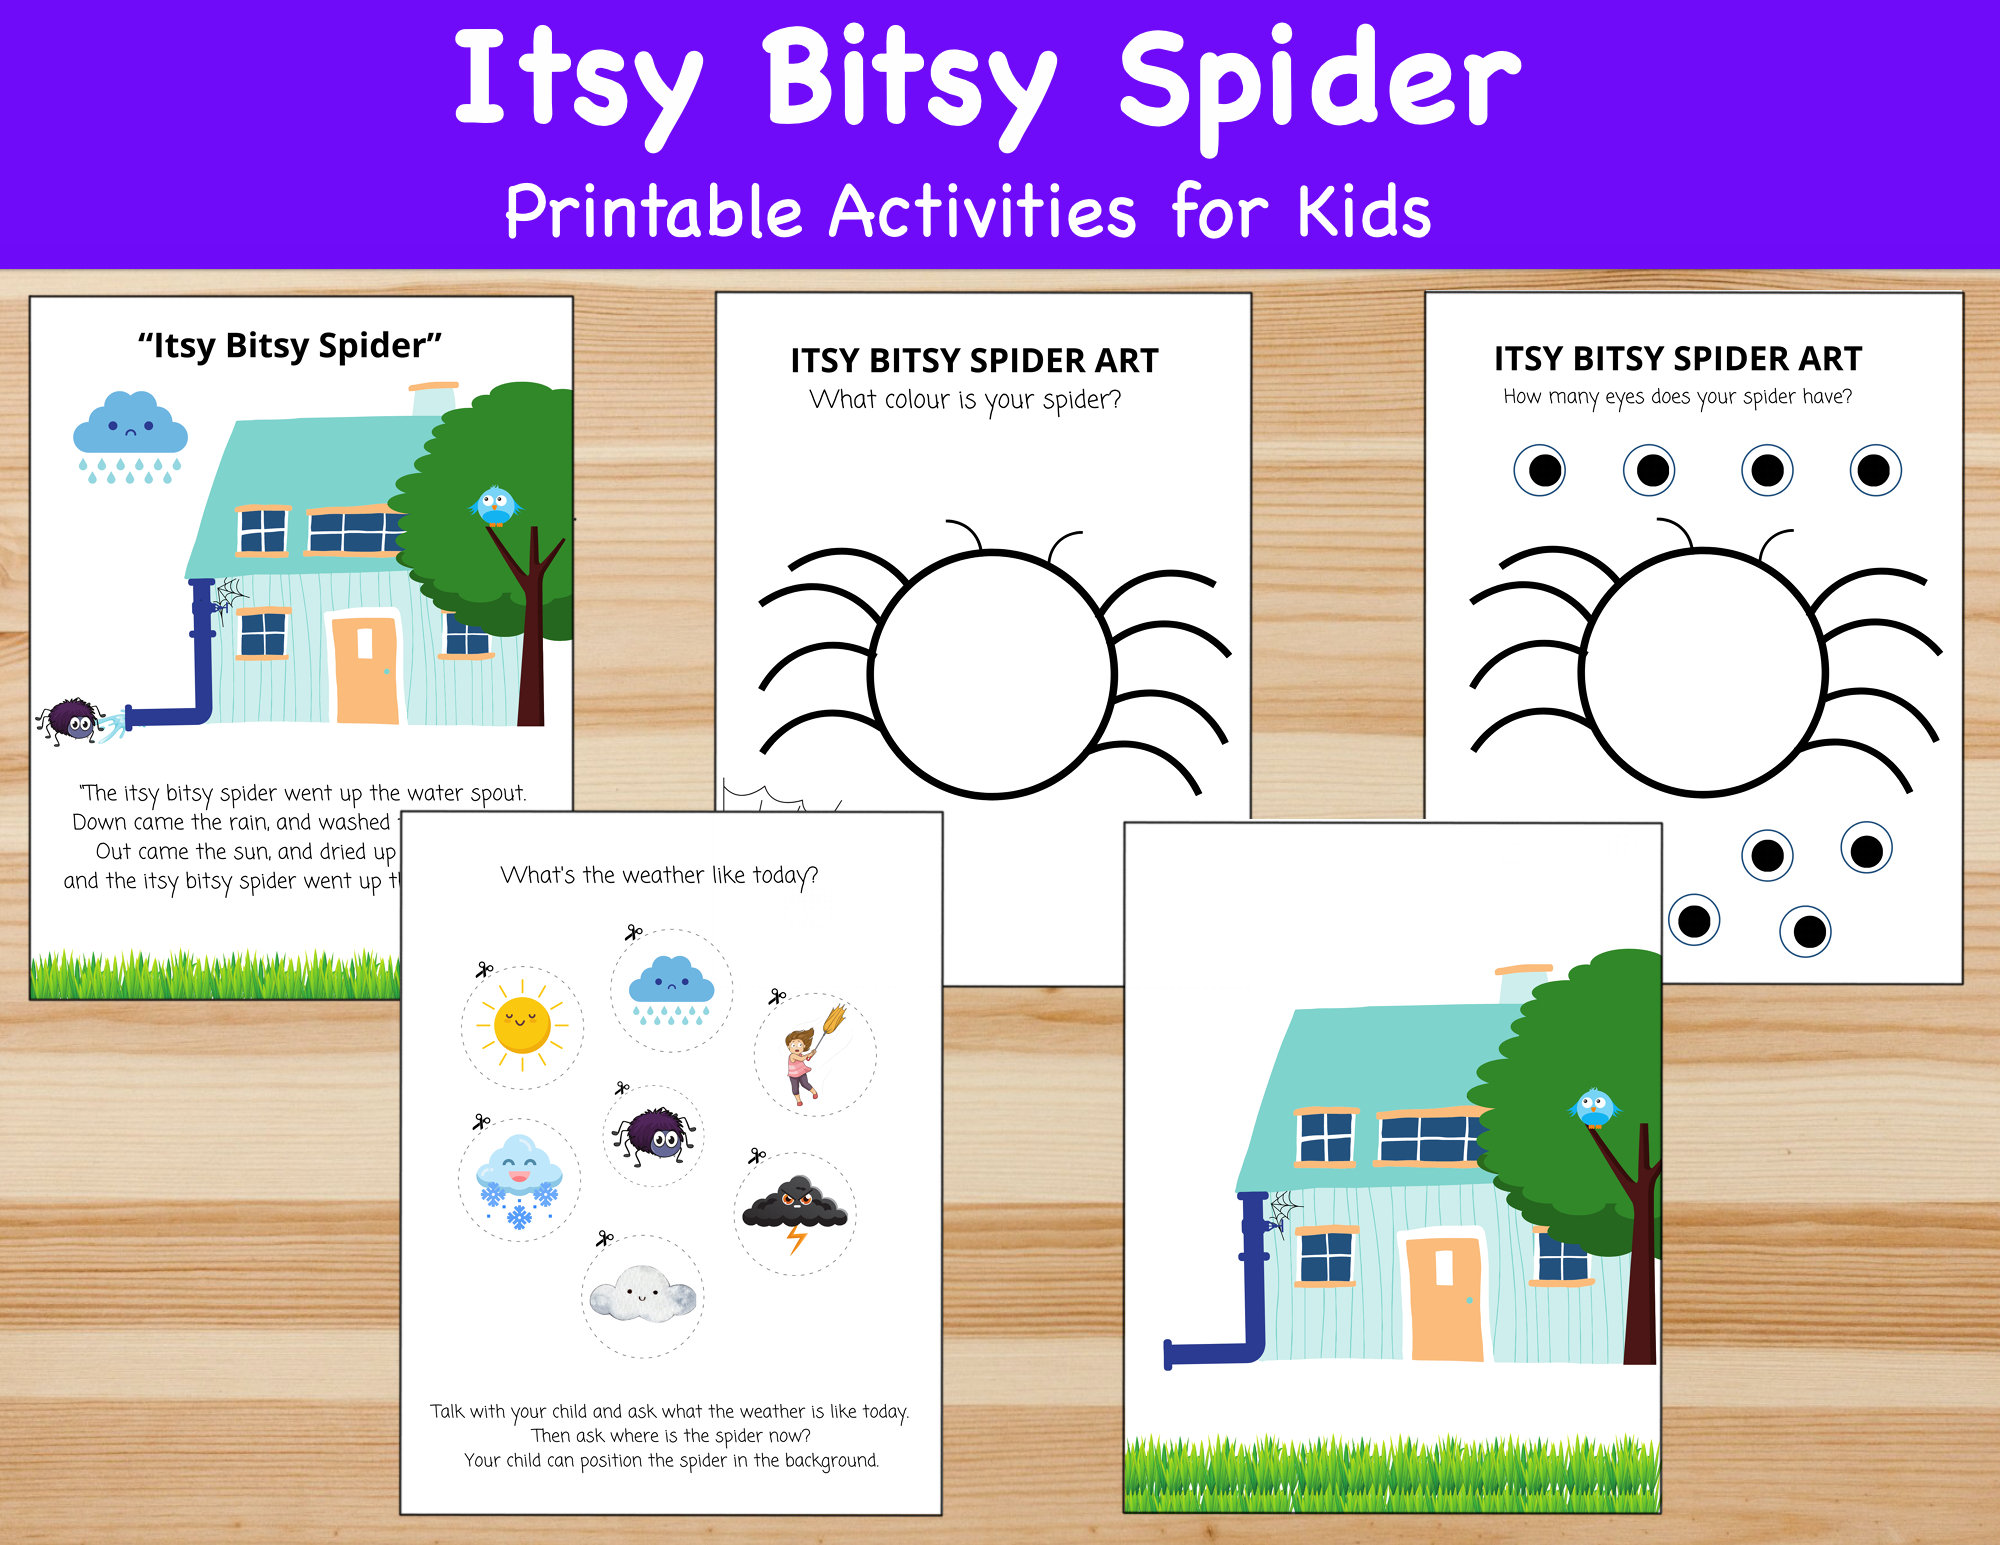 Itsy Bitsy Spider Printable Lyrics, Origins, and Video